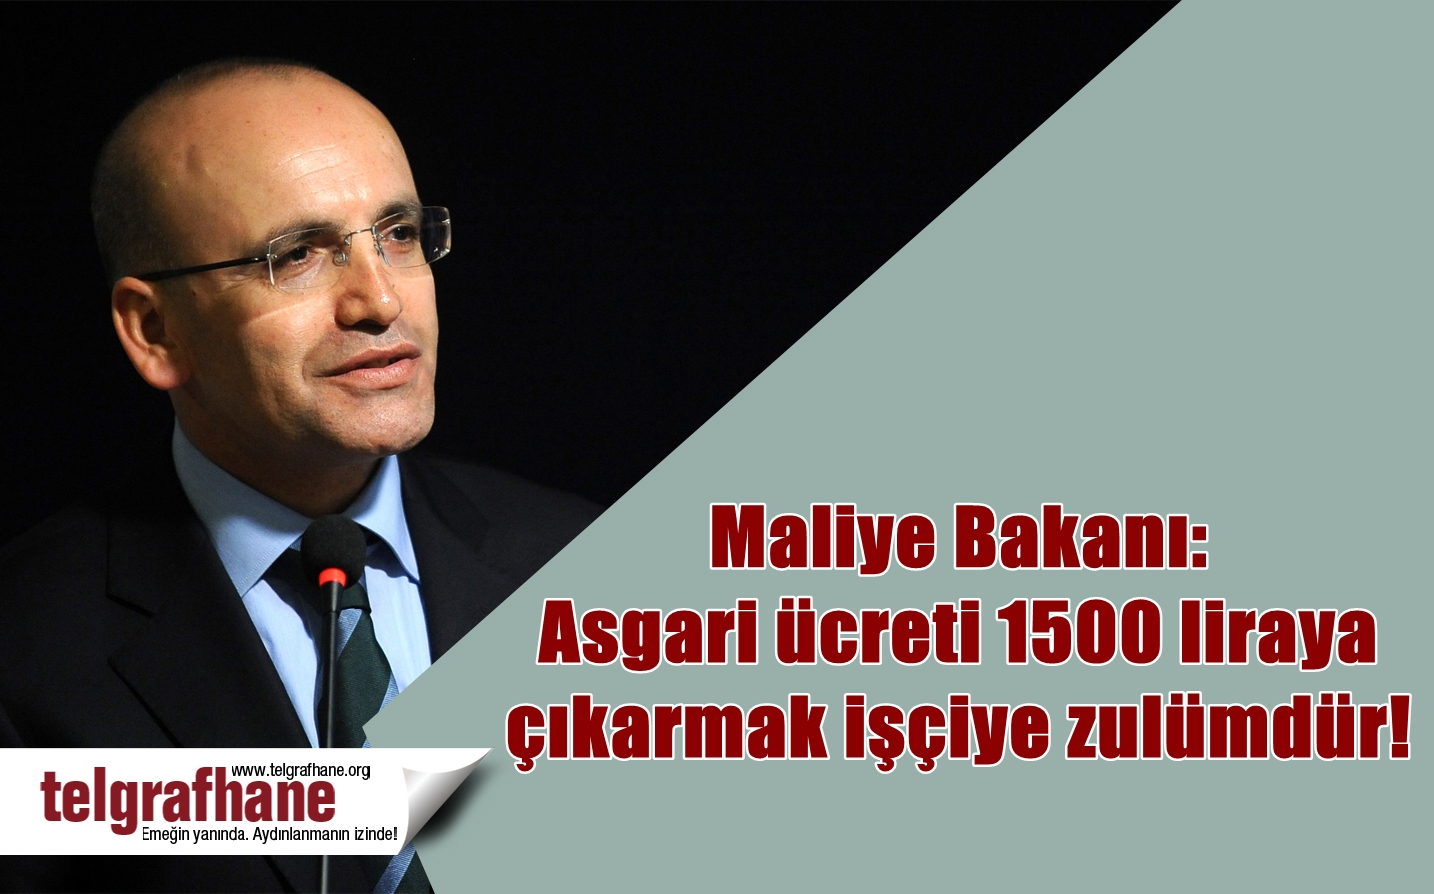 Maliye Bakanı: Asgari ücreti 1500 liraya çıkarmak işçiye zulümdür!